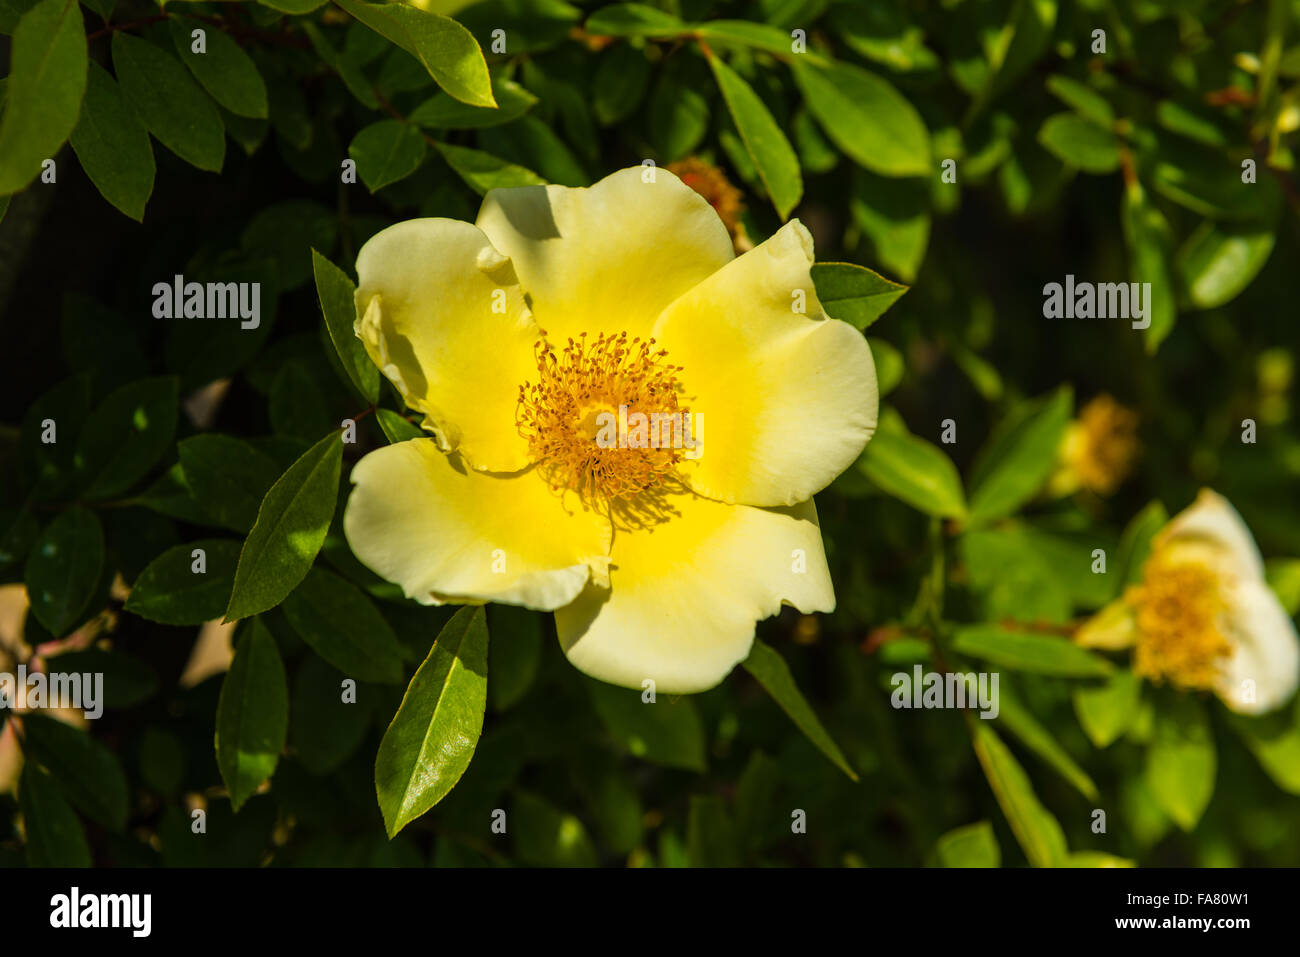 Bush of beautiful yellow dog-roses in a garden. Horizontal shot Stock Photo